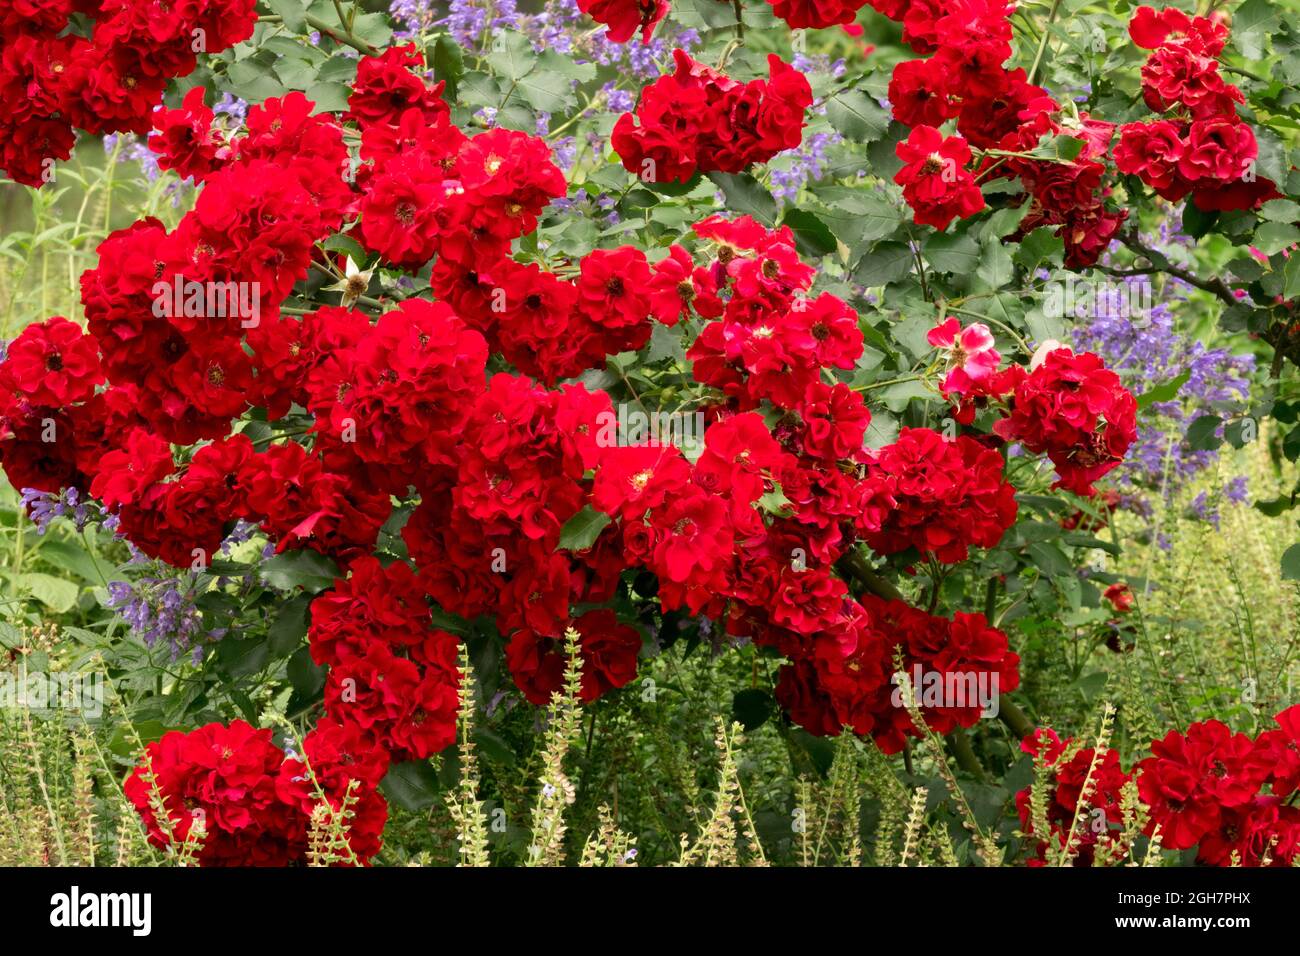 Rosa Roter Korsar, Red Corsair, Temptress flowering shrubs richly flowering  climber Red Rose garden shrubs Stock Photo - Alamy